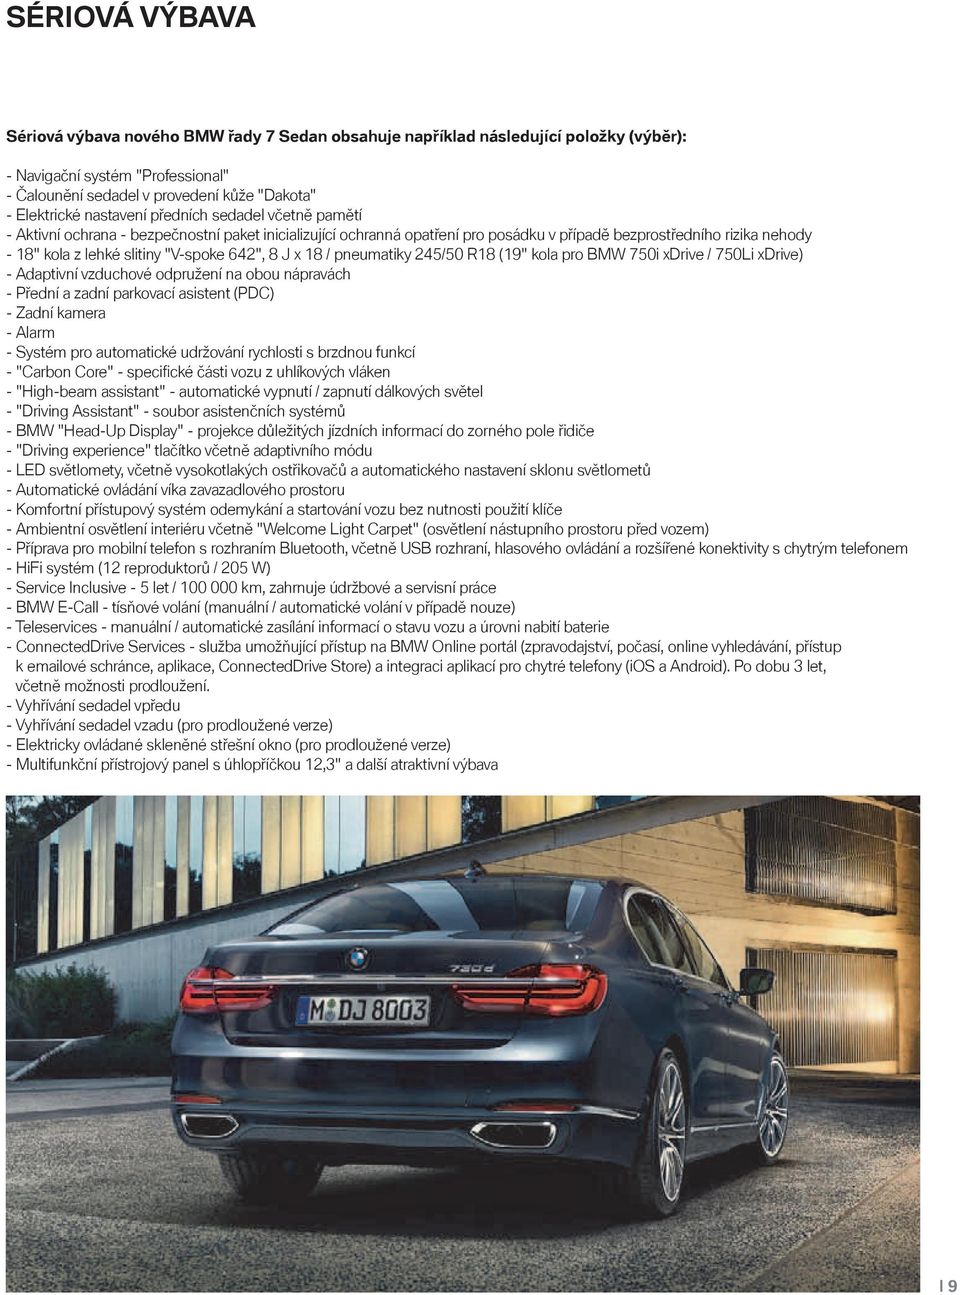 "V-spoke 642", 8 J x 18 / pneumatiky 245/50 R18 (19" kola pro BMW xdrive / ) - Adaptivní vzduchové odpružení na obou nápravách - Přední a zadní parkovací asistent (PDC) - Zadní kamera - Alarm -